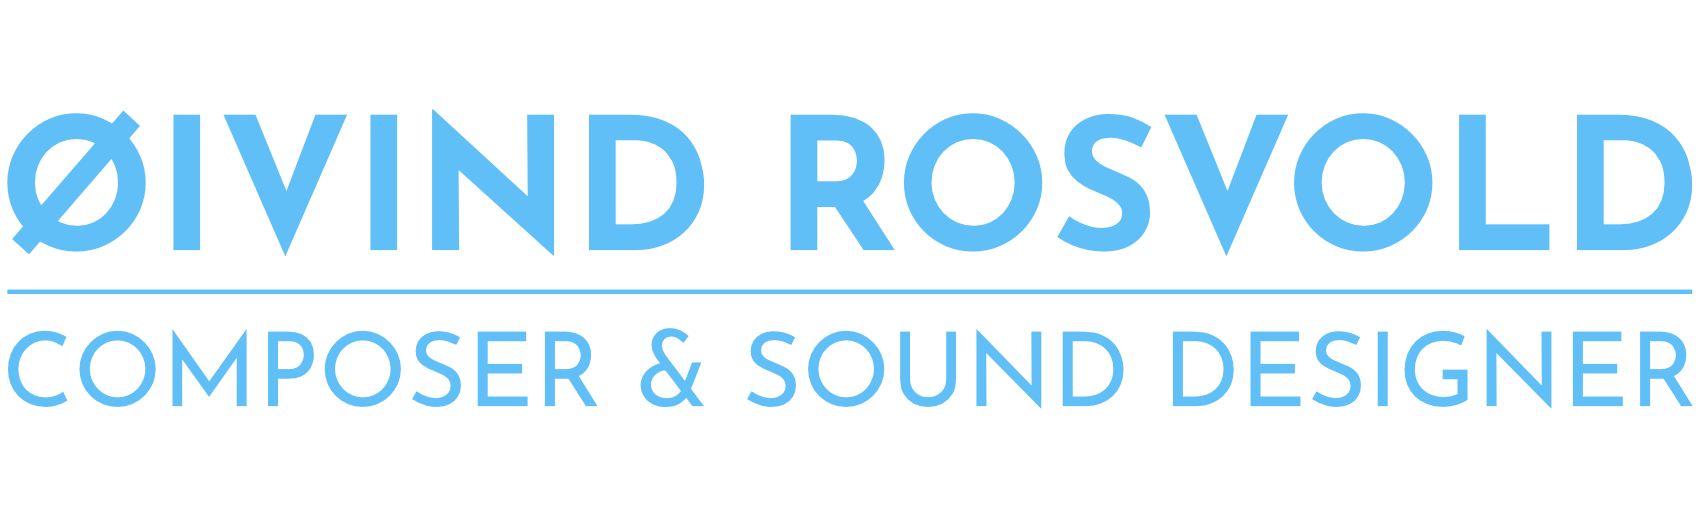 Øivind Rosvold Composer & Sound Designer